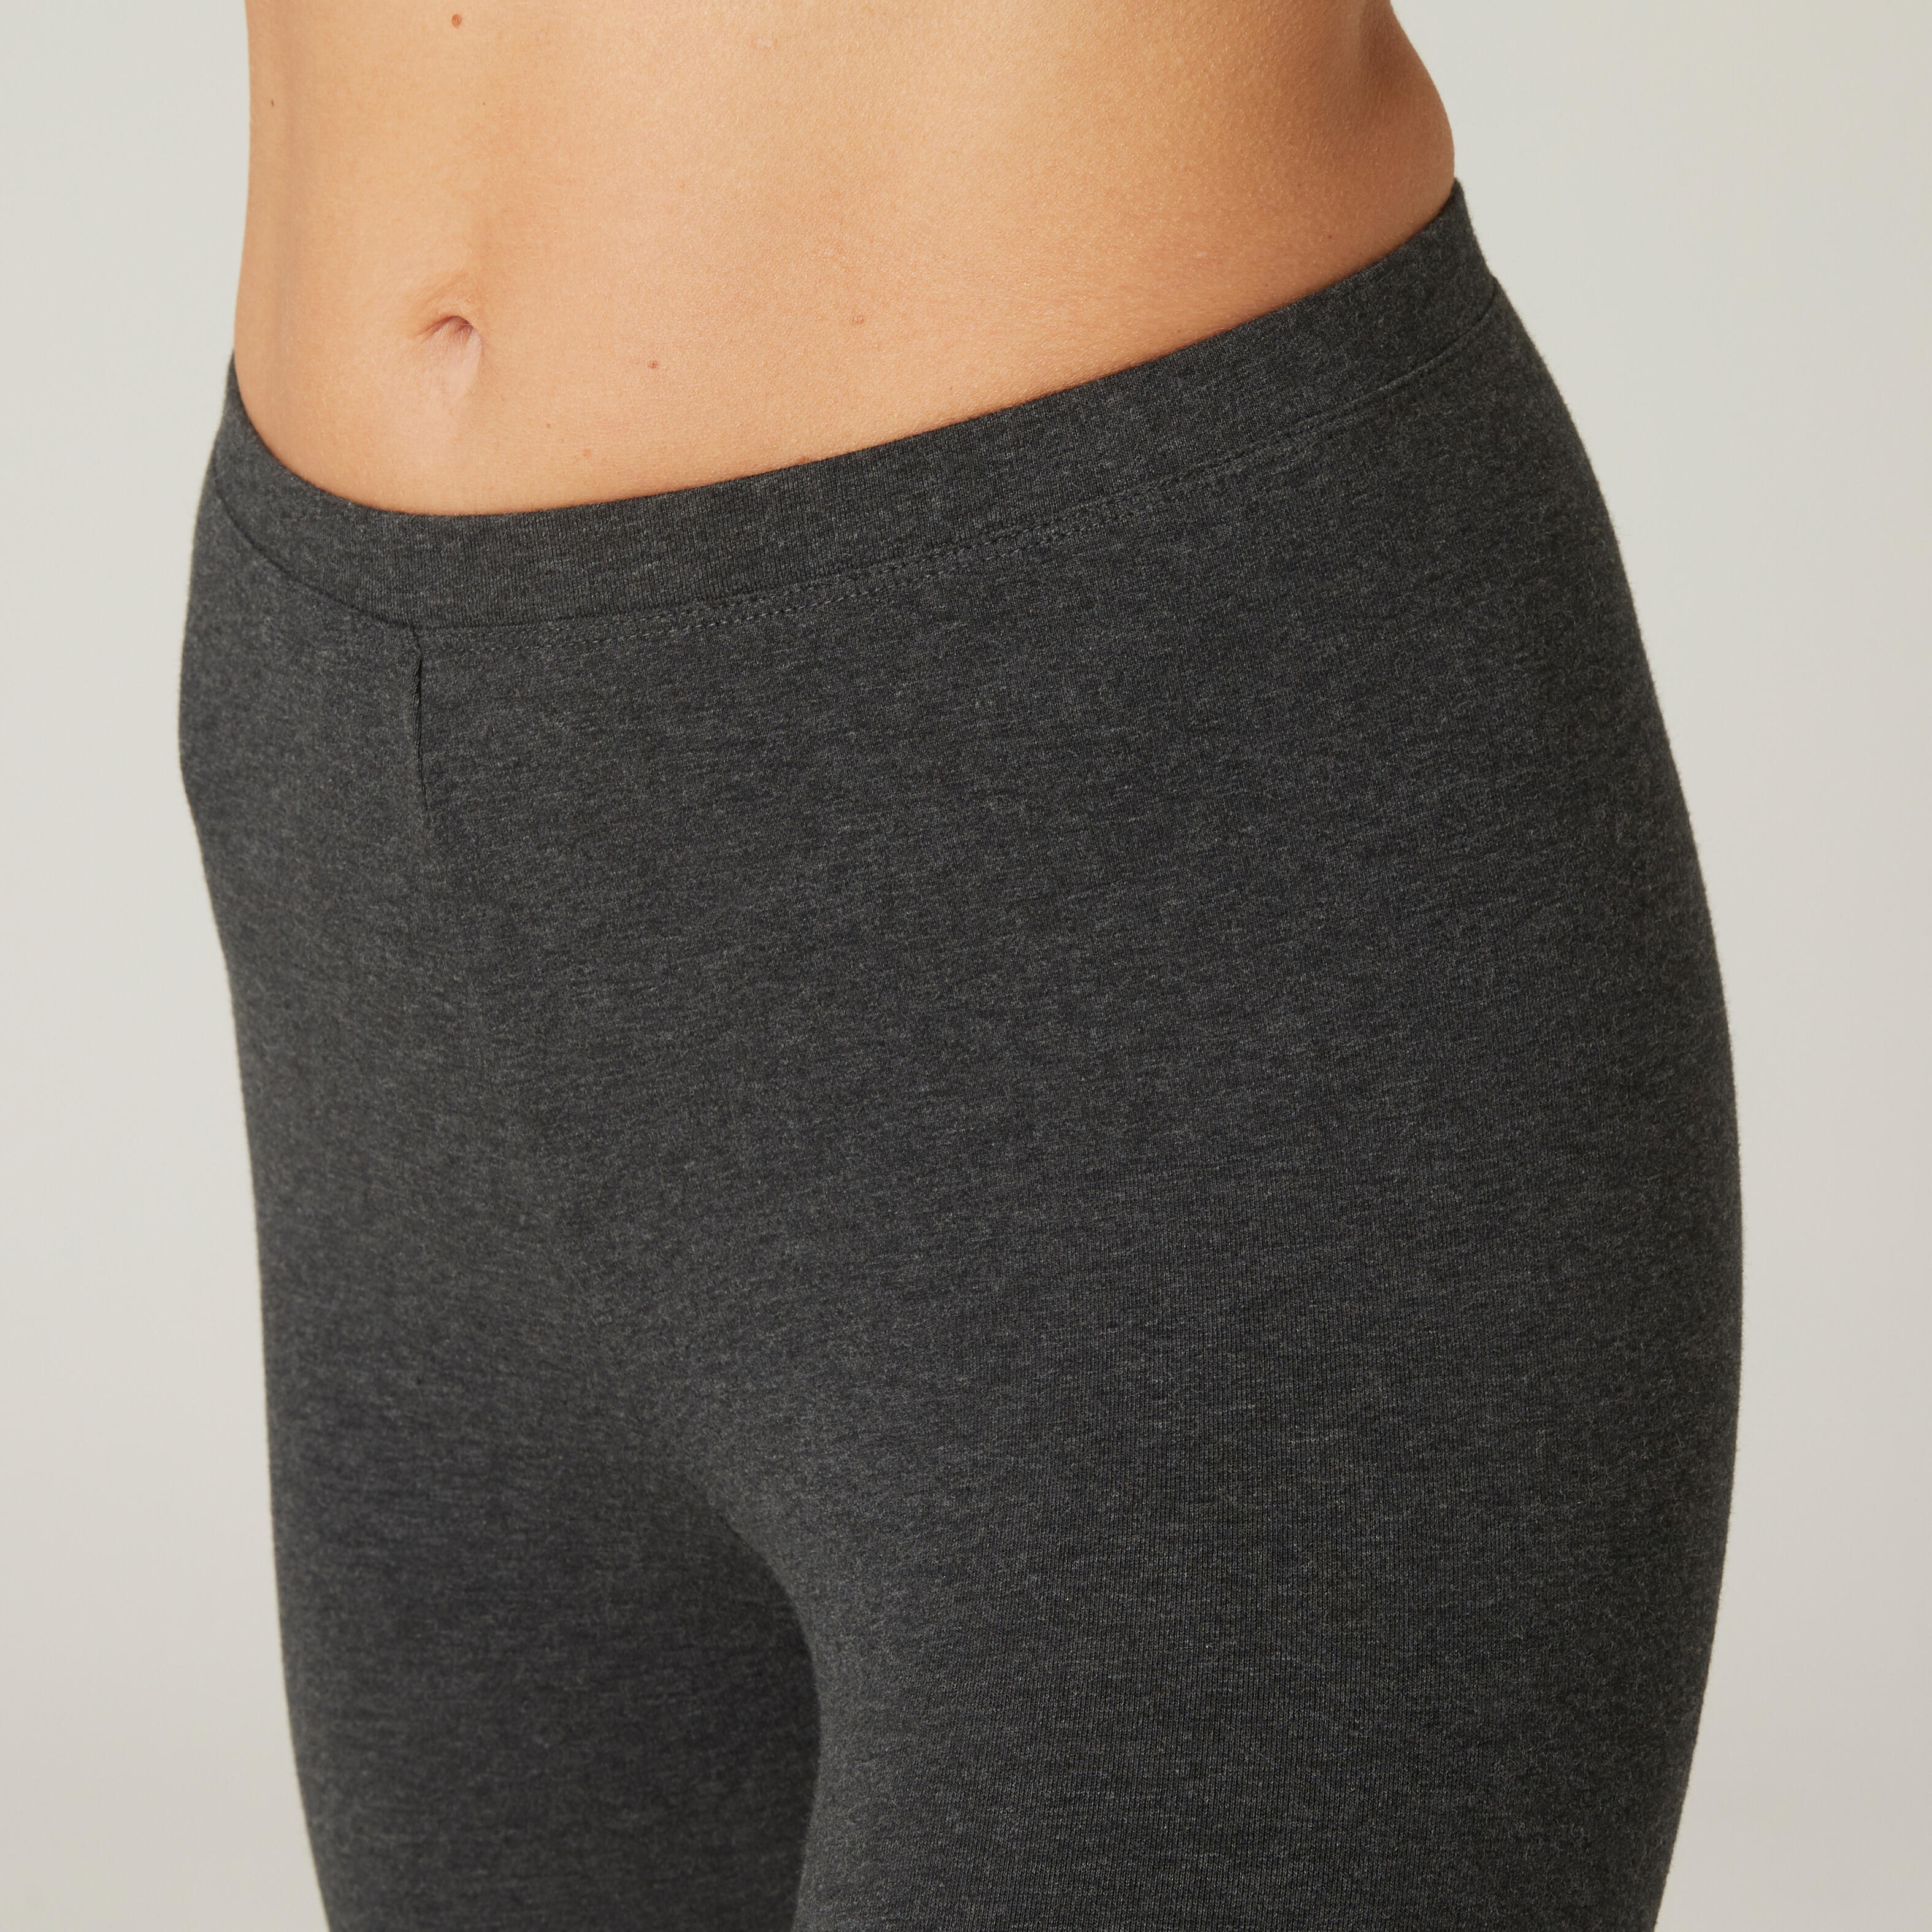 Women Yoga Pants Organic Cotton - Black/Grey